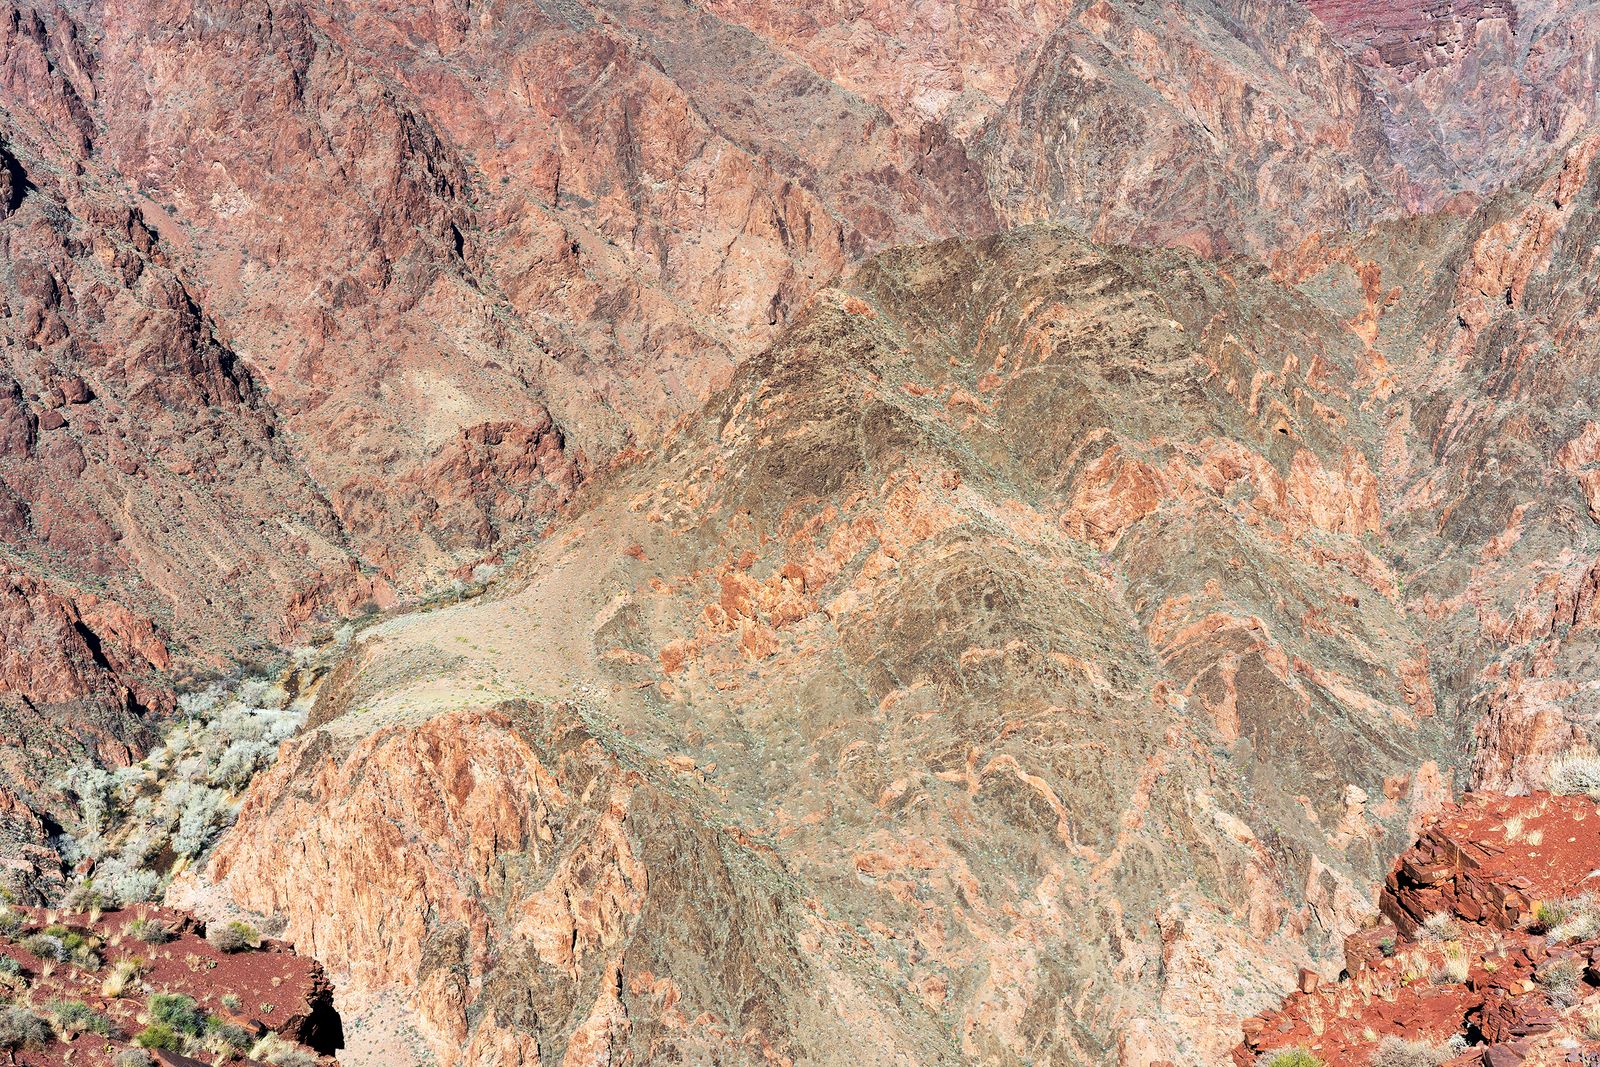 © Serge Levy - South Kaibab Trail, Grand Canyon, AZ. 2019. (Size: 17" x 22")